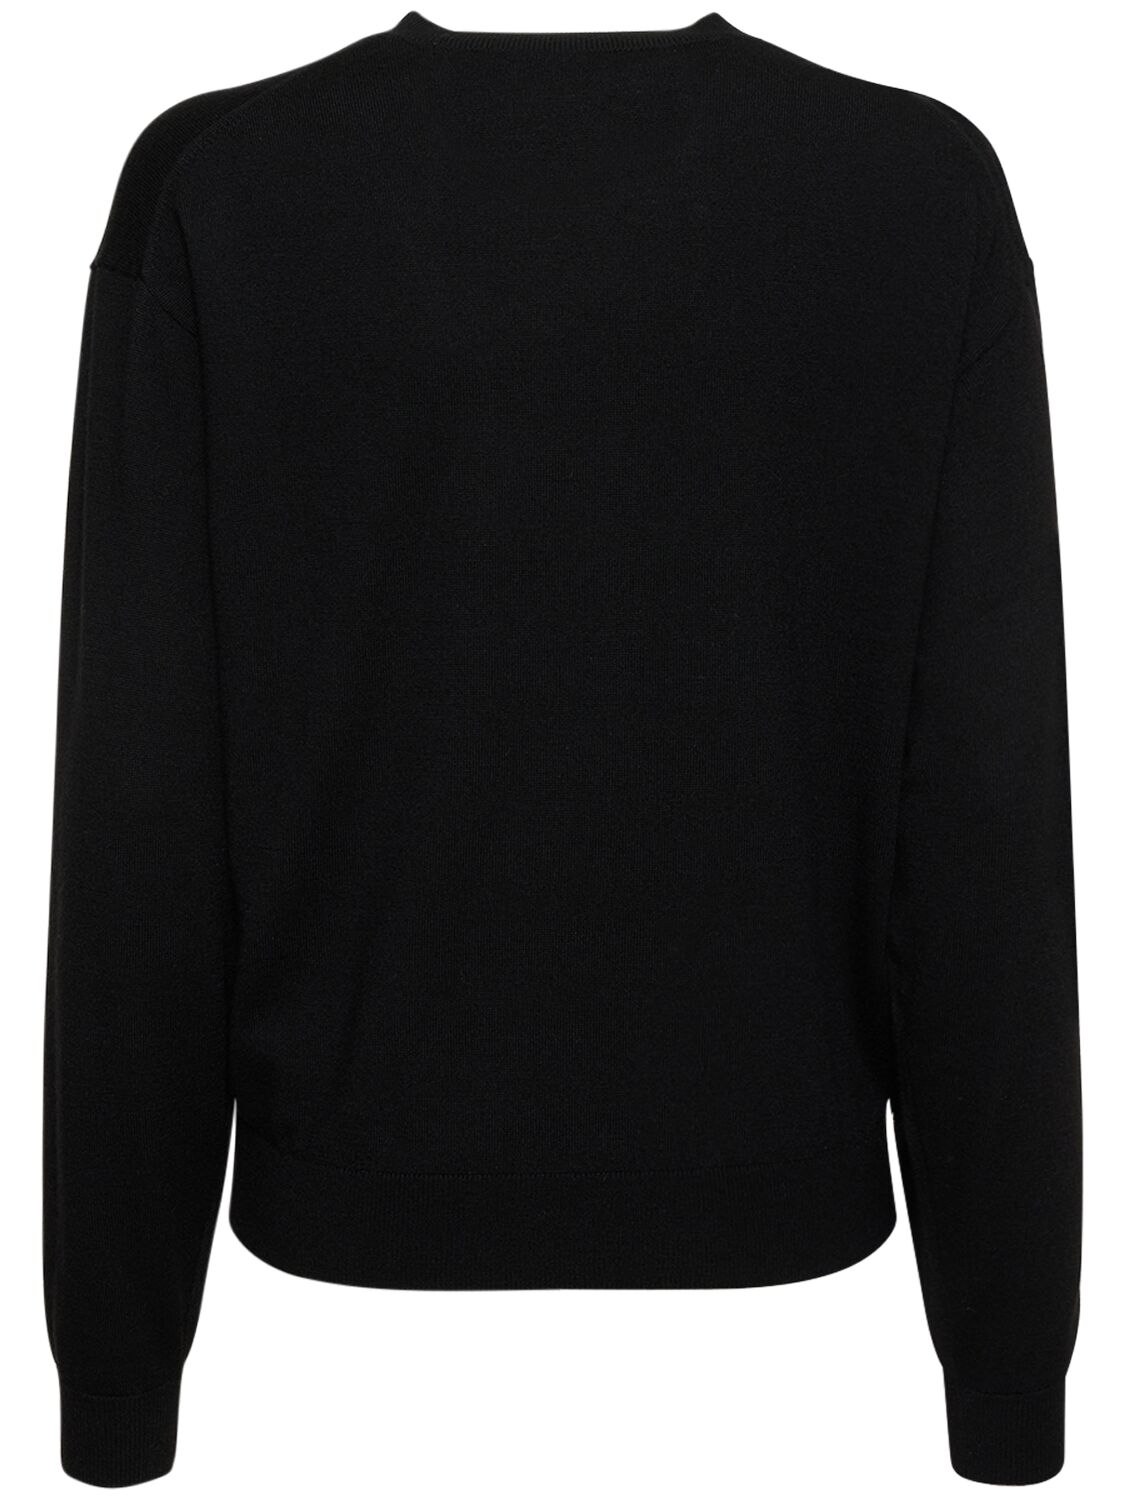 Shop Kenzo Boke Flower Crest Logo Wool Sweater In Black